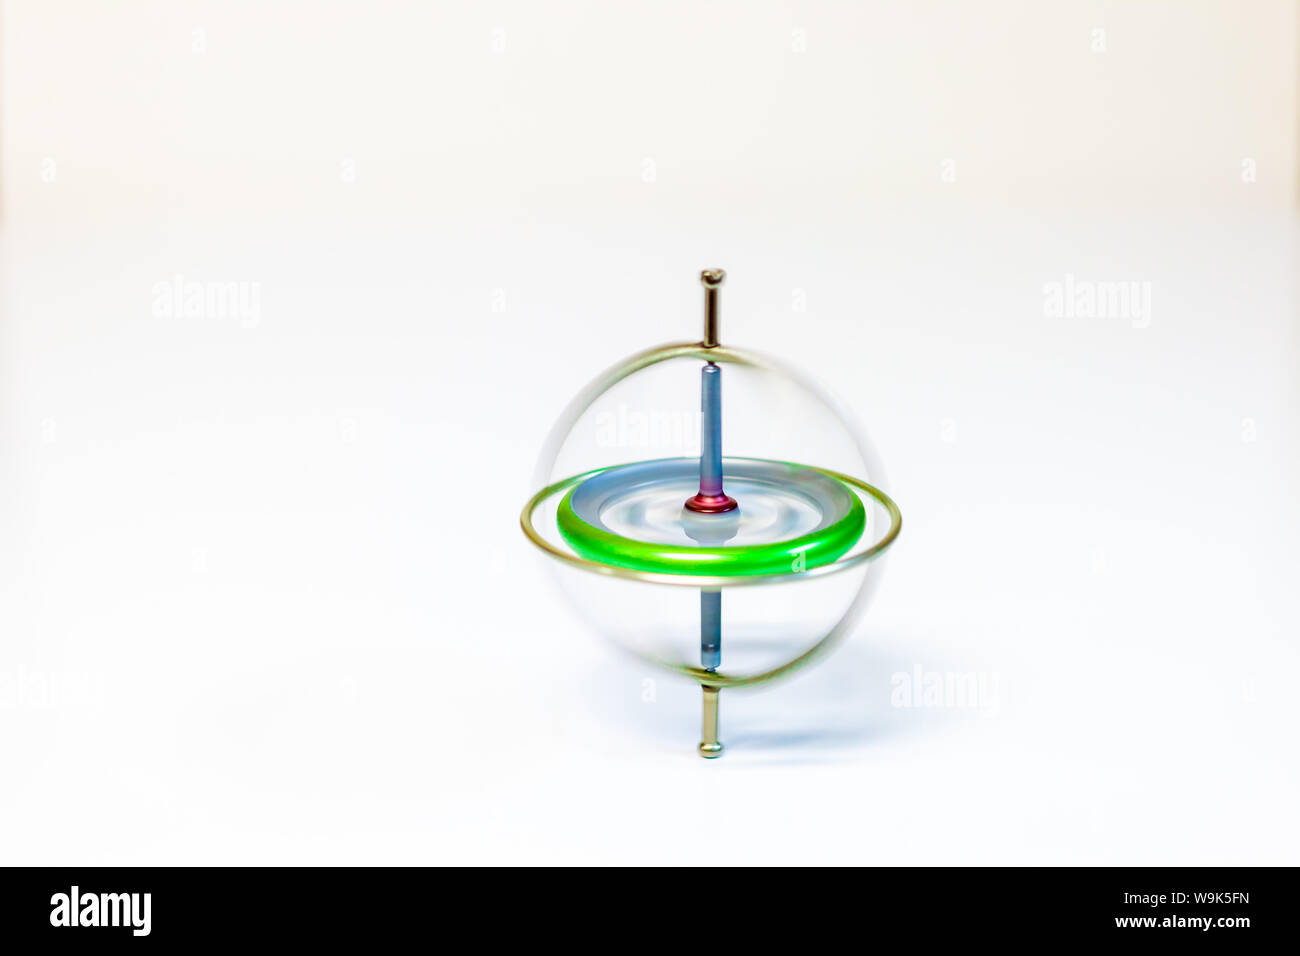 Spinner Gyroscope Stock Illustrations – 75 Spinner Gyroscope Stock  Illustrations, Vectors & Clipart - Dreamstime